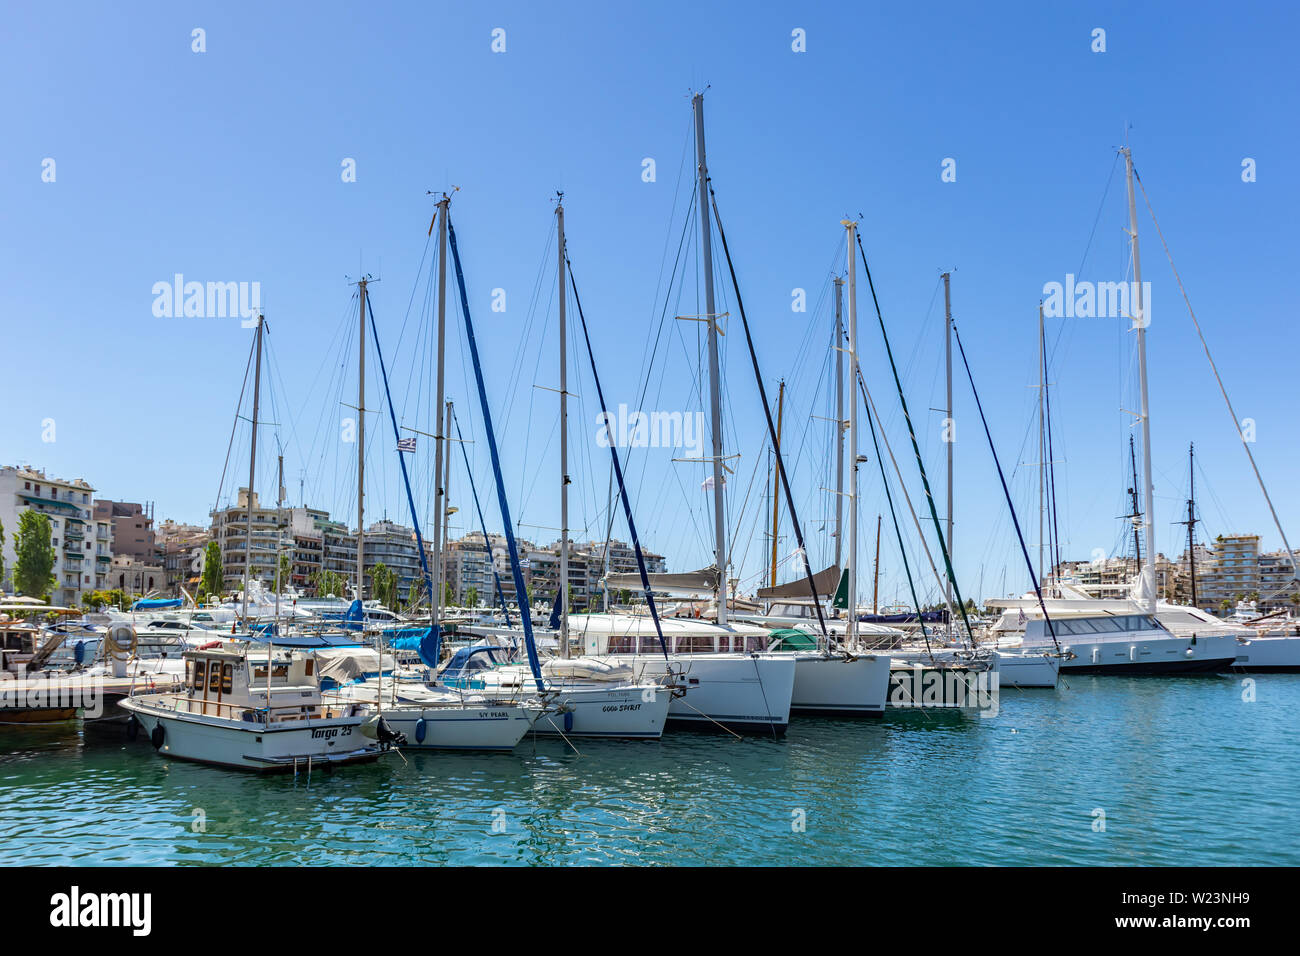 El 29 de abril de 2019. Marina Zeas en el Pireo, Grecia. Amarrados los buques están listos para navegar. La reflexión de barcos, el azul mar en calma, la ciudad y el fondo del cielo. Foto de stock